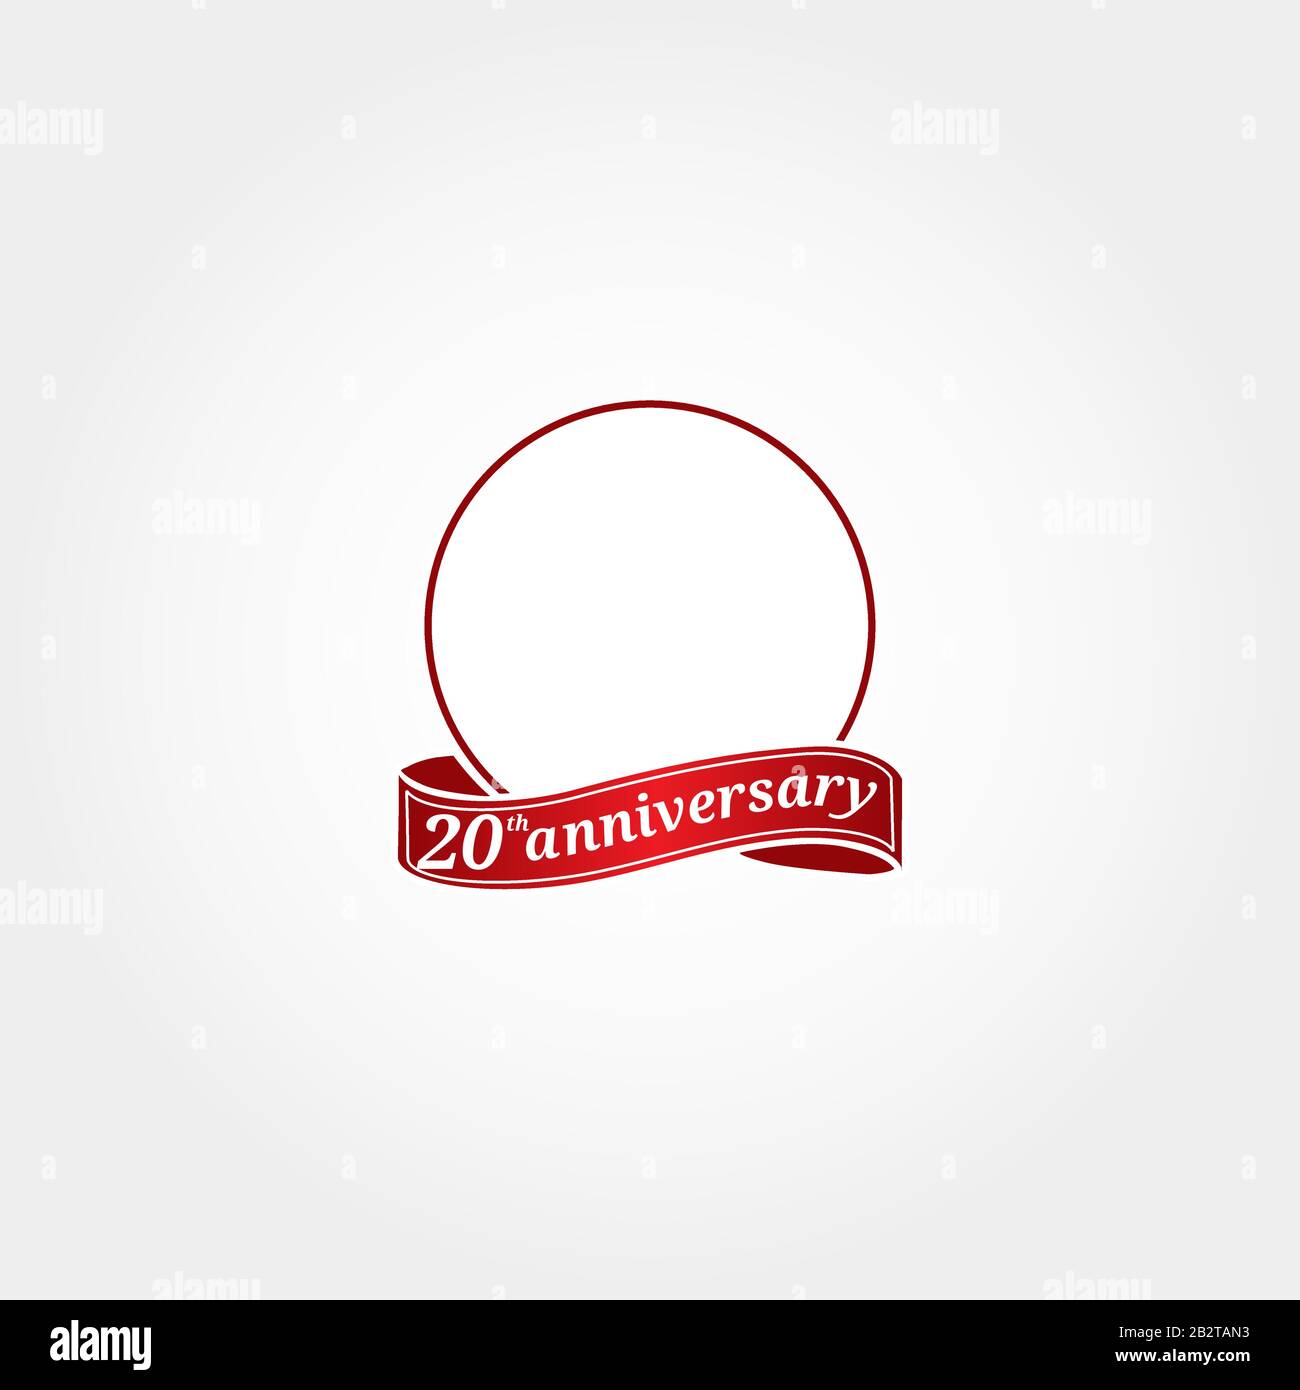 Template Logo 20-jähriges Jubiläum mit einem Kreis und der Nummer 20 darin und beschriftet das Jubiläumsjahr. Zwanzigjähriges Jubiläum. Stock Vektor